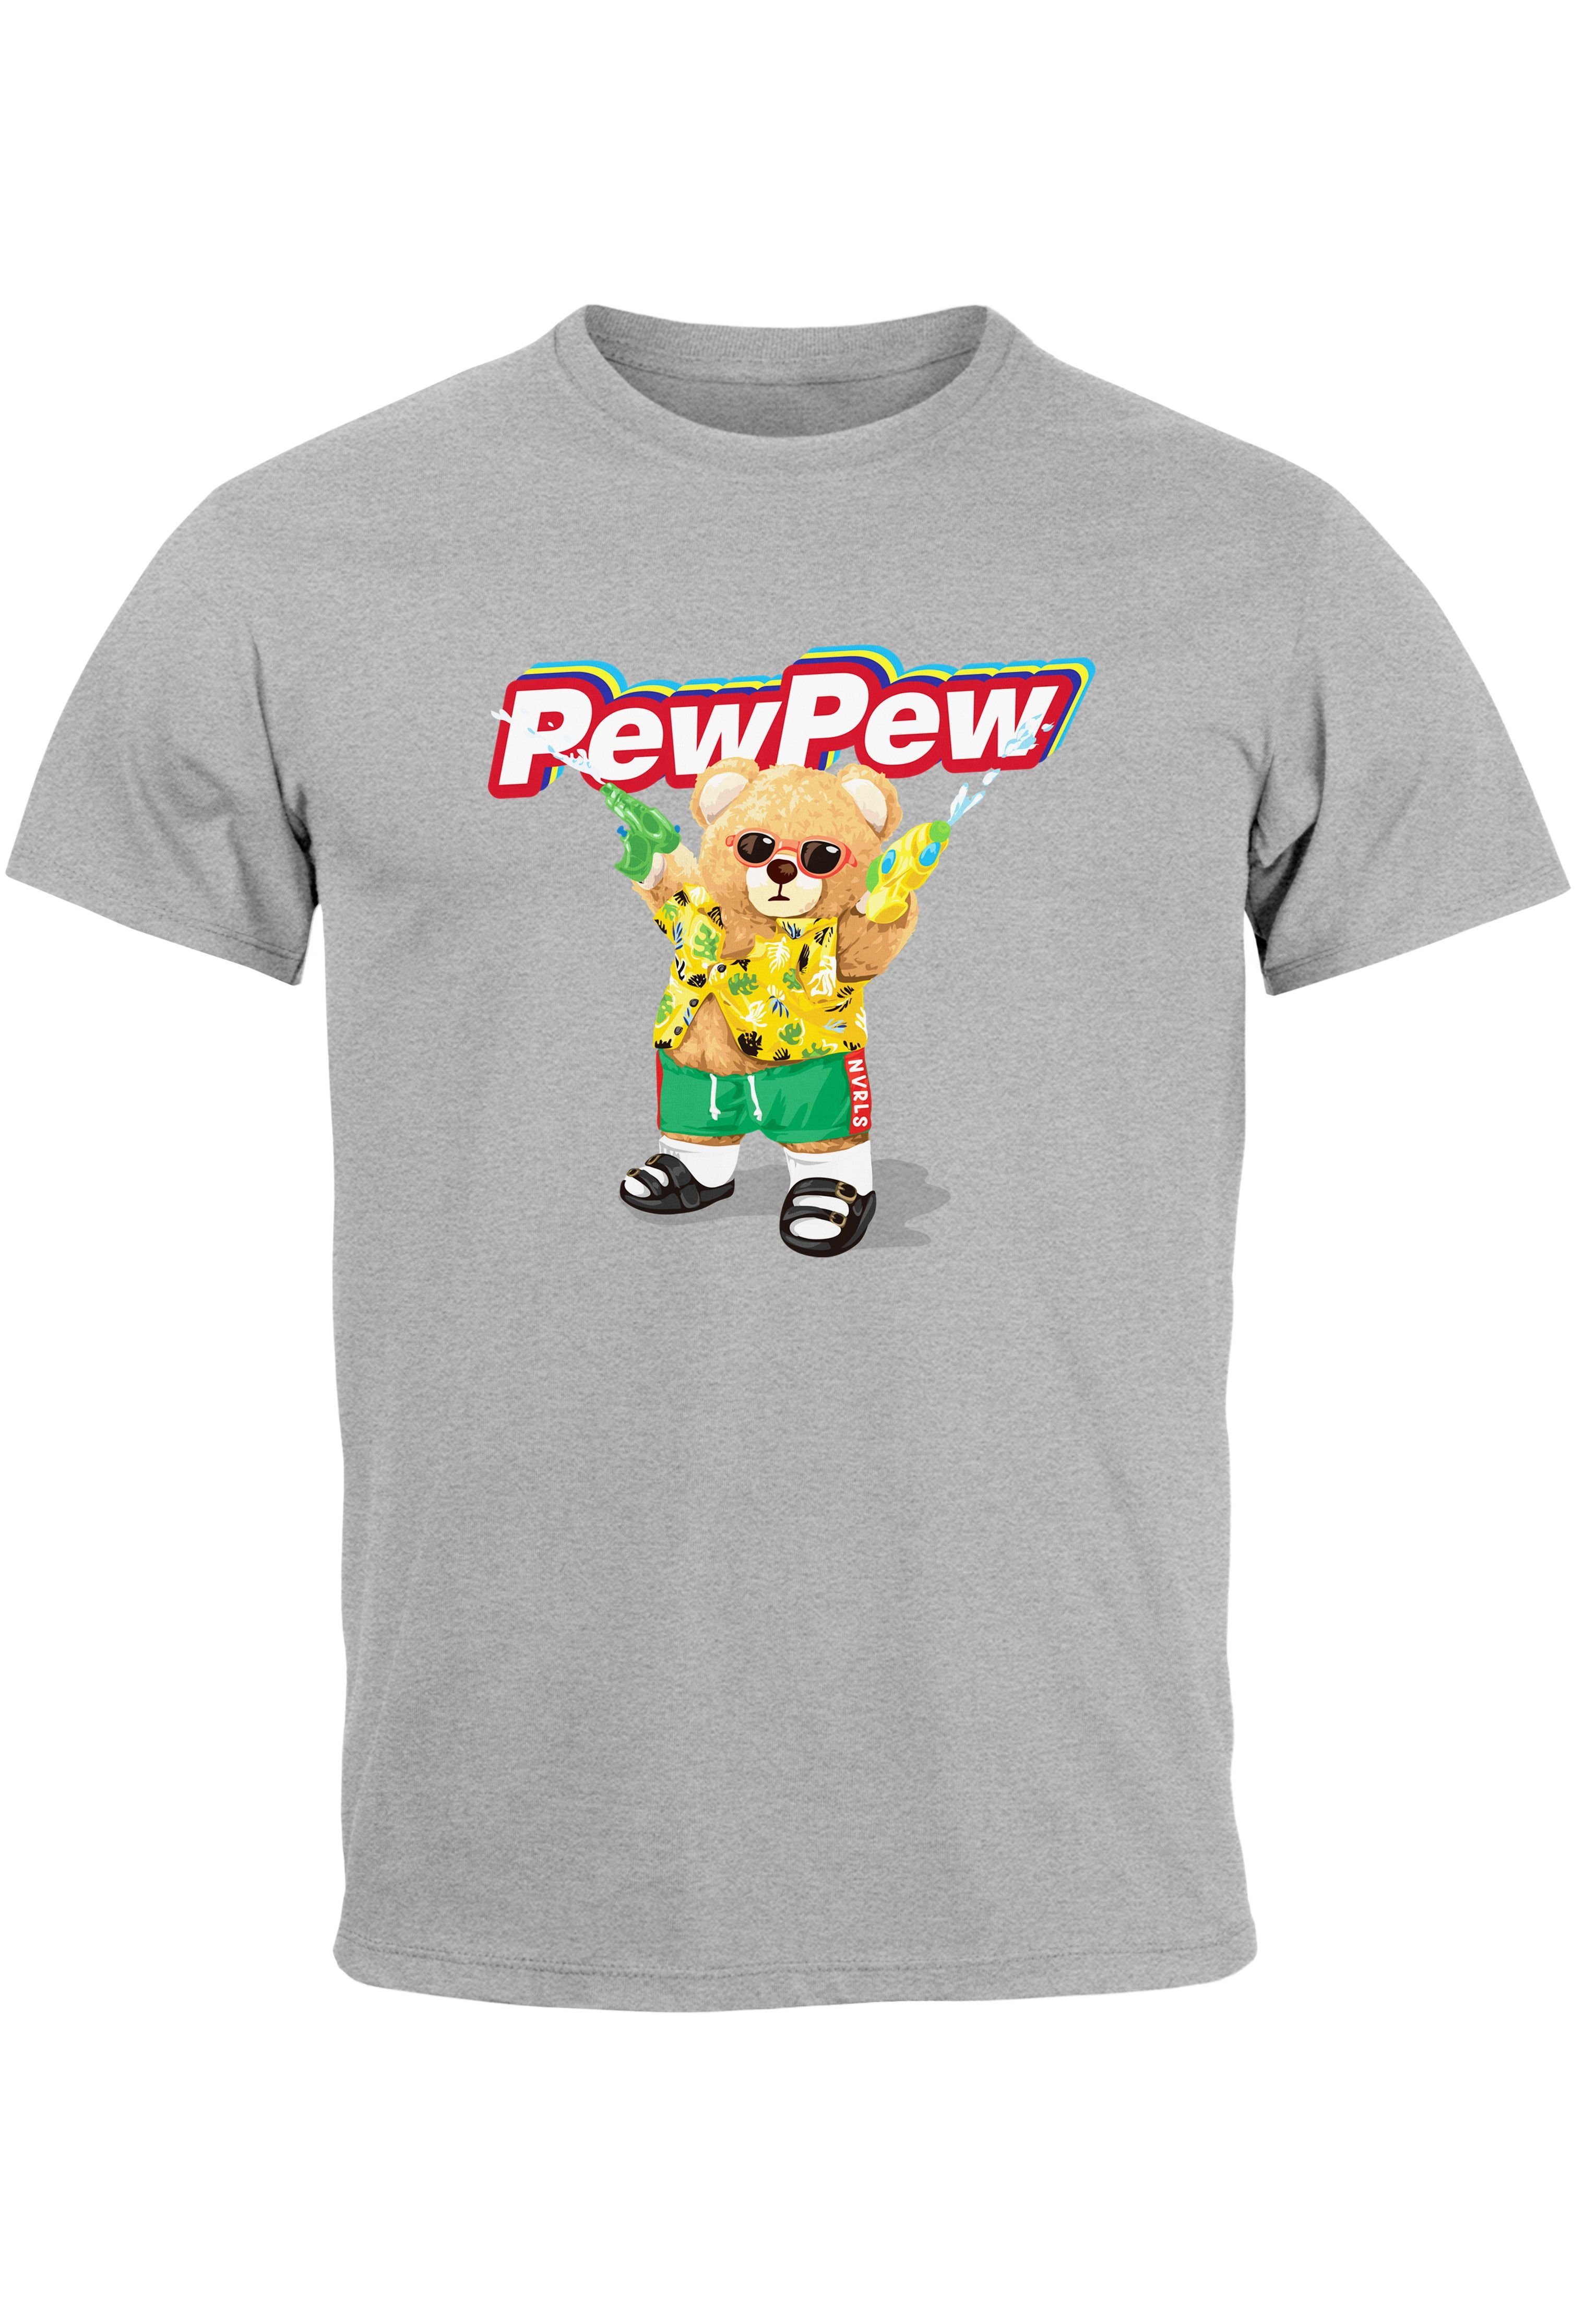 Neverless Print-Shirt Herren T-Shirt Pew Pew Bär Sommer Printshirt Aufdruck Motiv lustig Fas mit Print grau